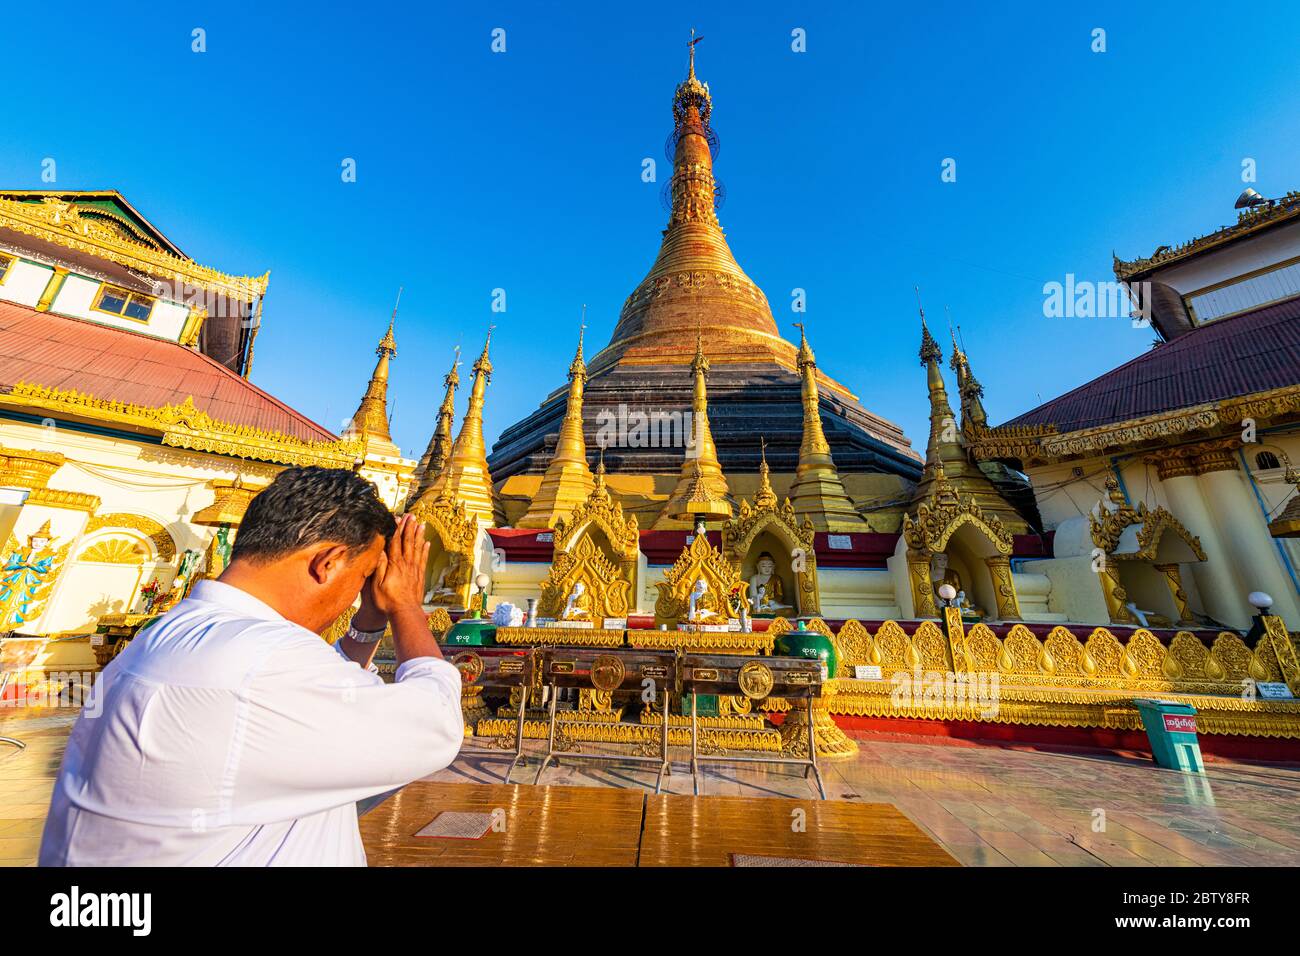 Homme priant dans le kyaikthanian paya, Mawlamyine, mon état, Myanmar (Birmanie), Asie Banque D'Images